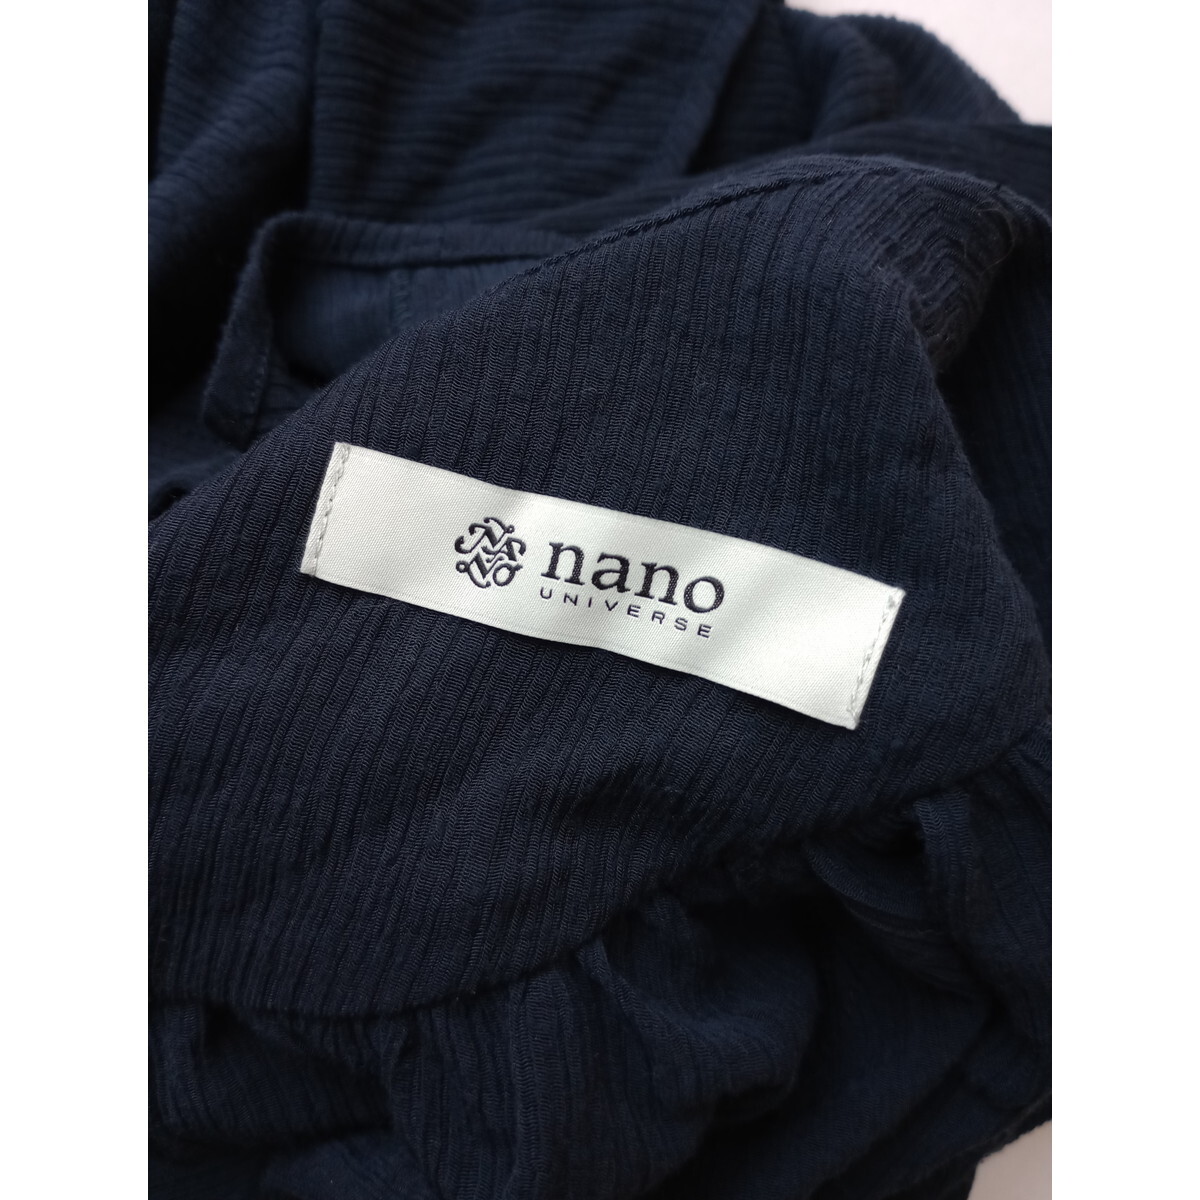 nano universe ナノユニバース「きっと、着る人の気分に寄り添う。」ボリューム袖 楊柳 ブラウス プルオーバー ネイビー 36(49K+6913)_画像5